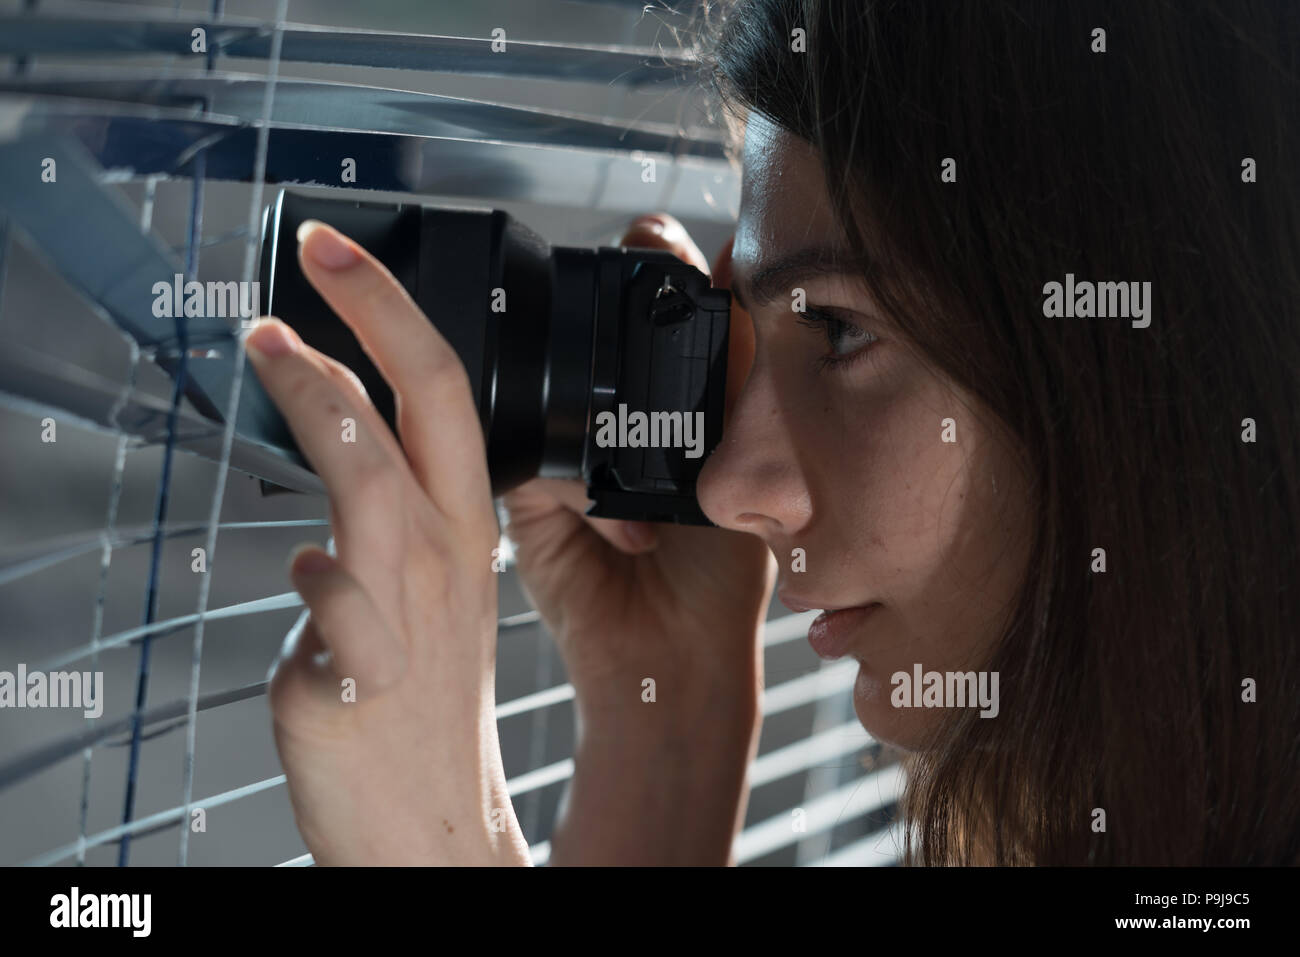 Jeune femme Paparazzi prendre une photo d'un air suspicieux autour d'un abat-jour tout en utilisant un appareil photo. Concept PIBR Banque D'Images